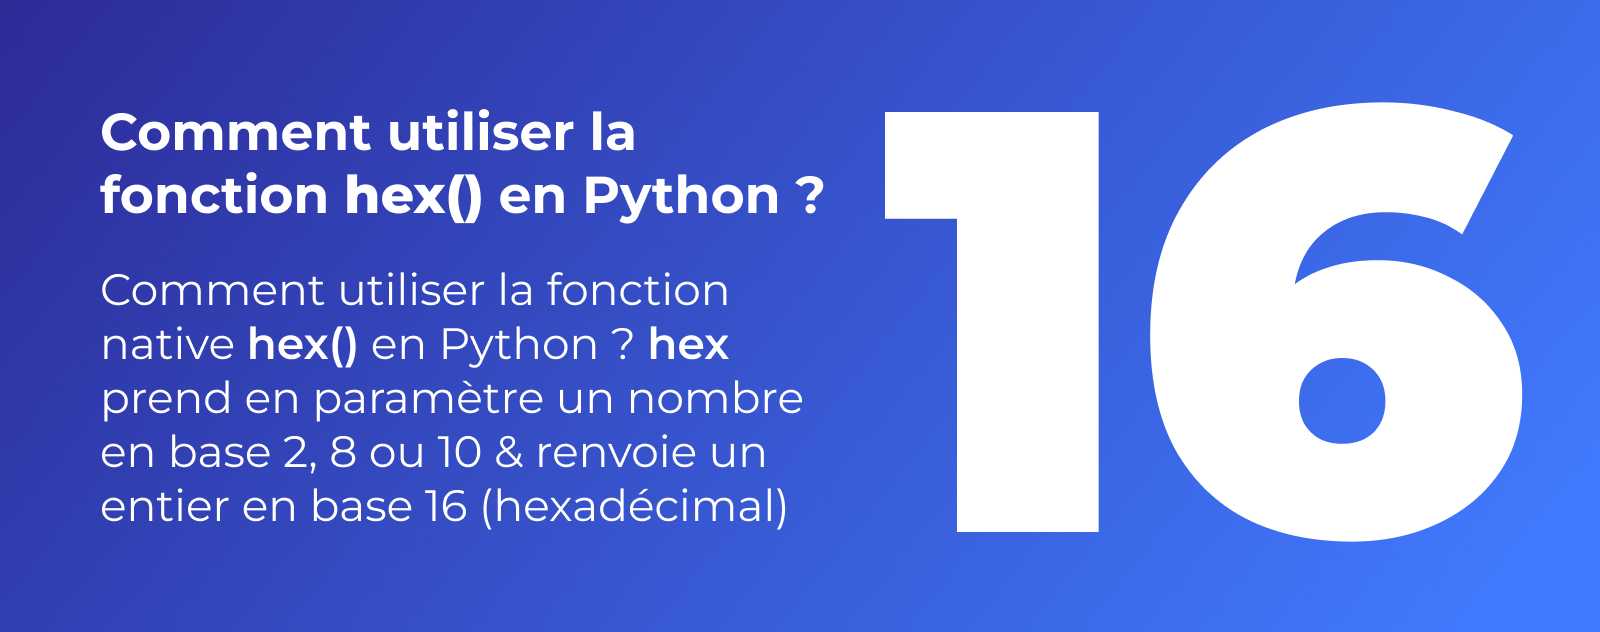 La fonction hex en Python